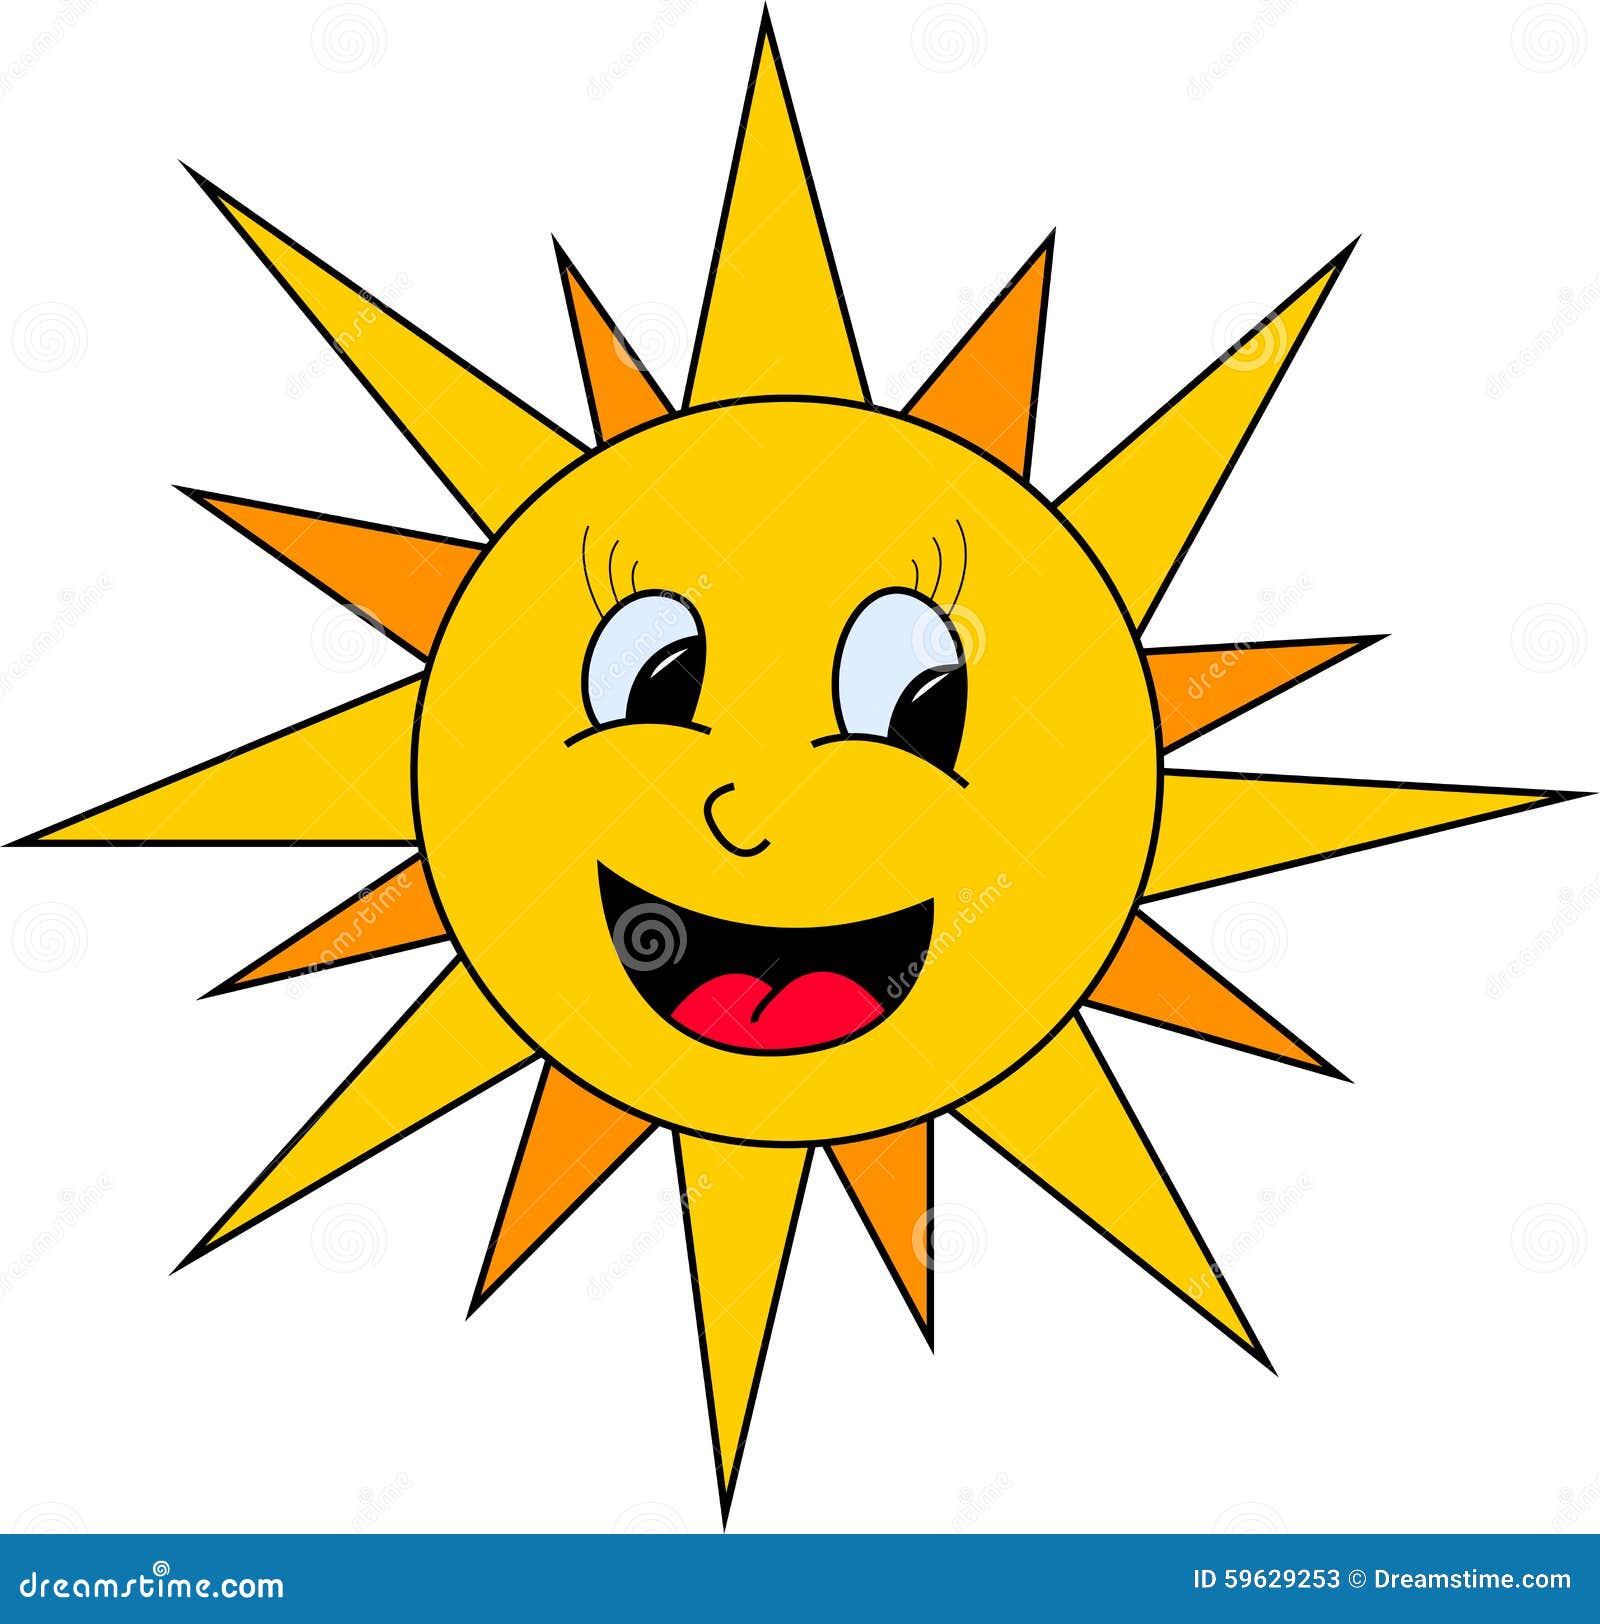 Sun illustration stock vector. Illustration of nature - 59629253